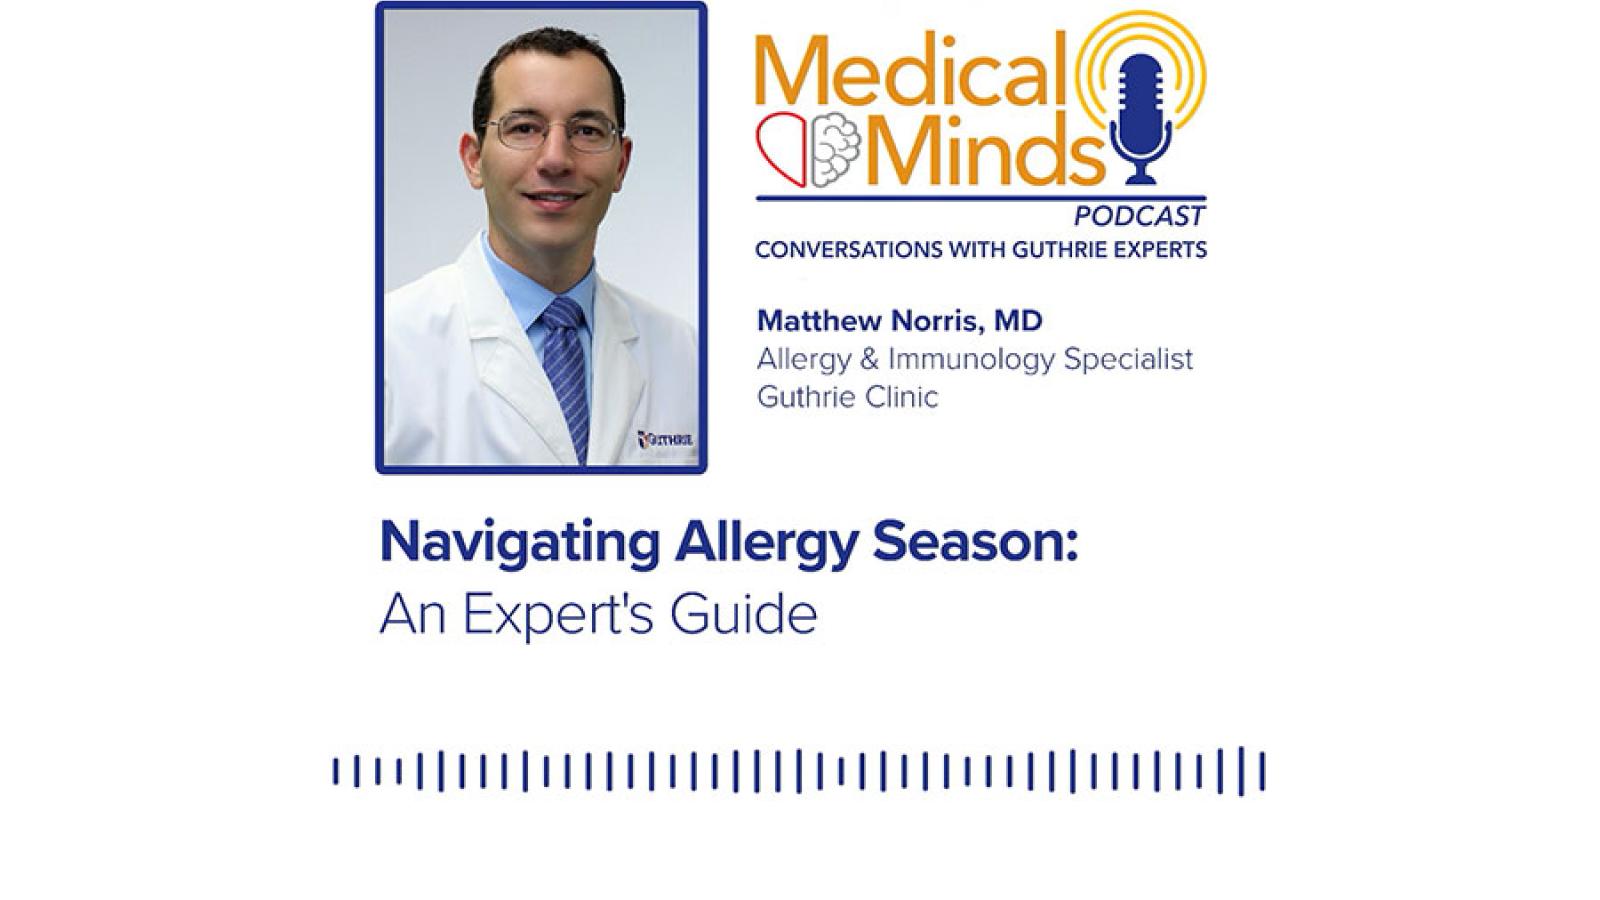 Navigating Allergy Season: An Expert's Guide